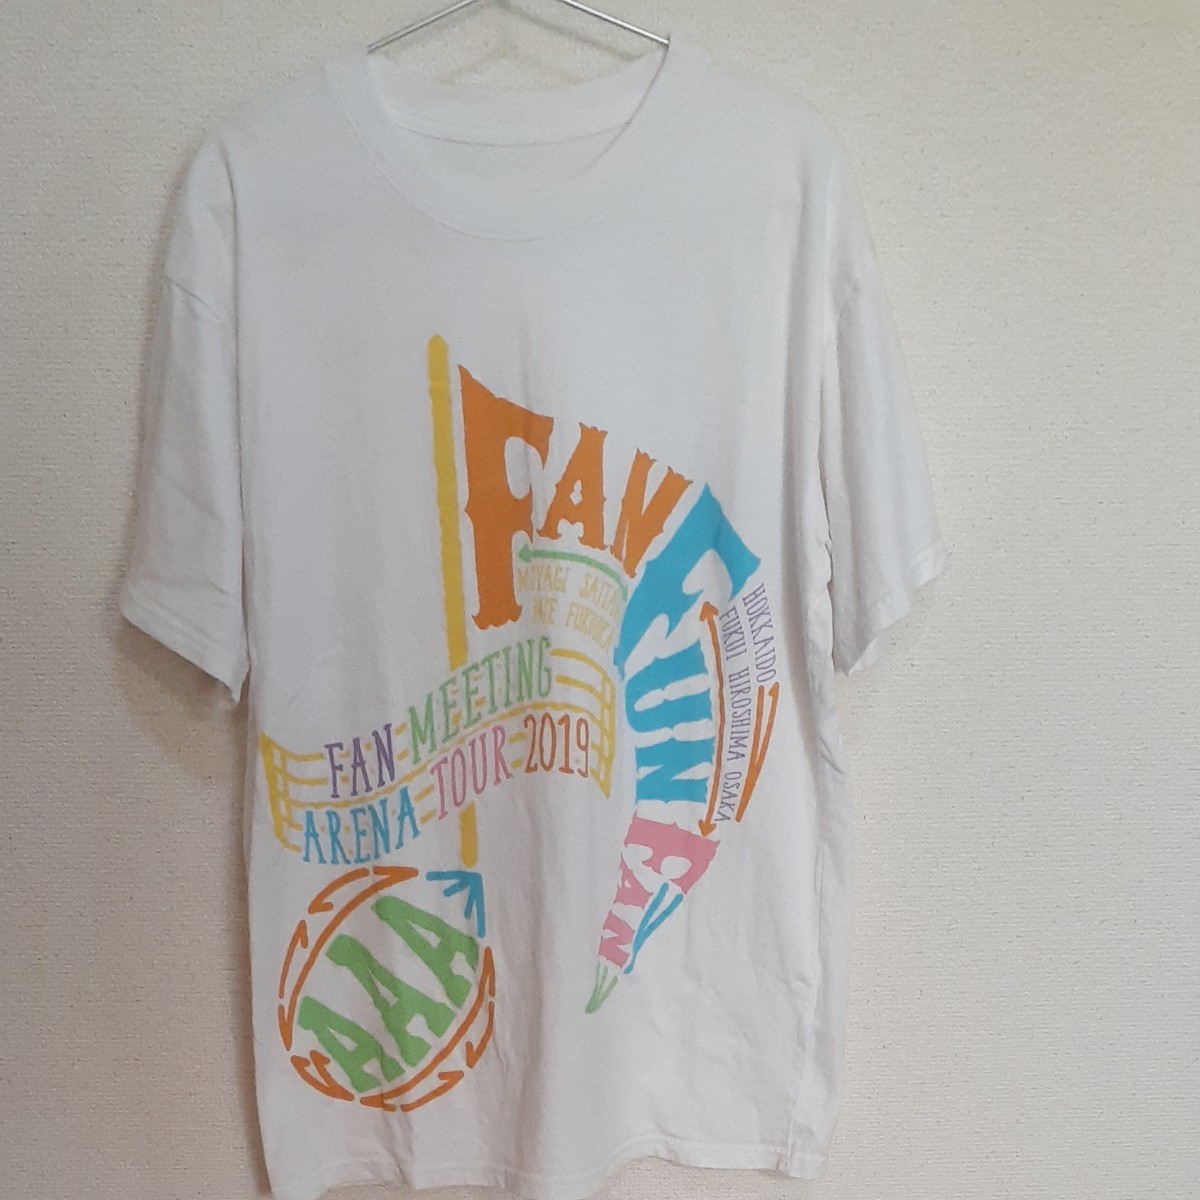 AAA　ファンミーティング2019 FANFUNFAN ライブTシャツ  L